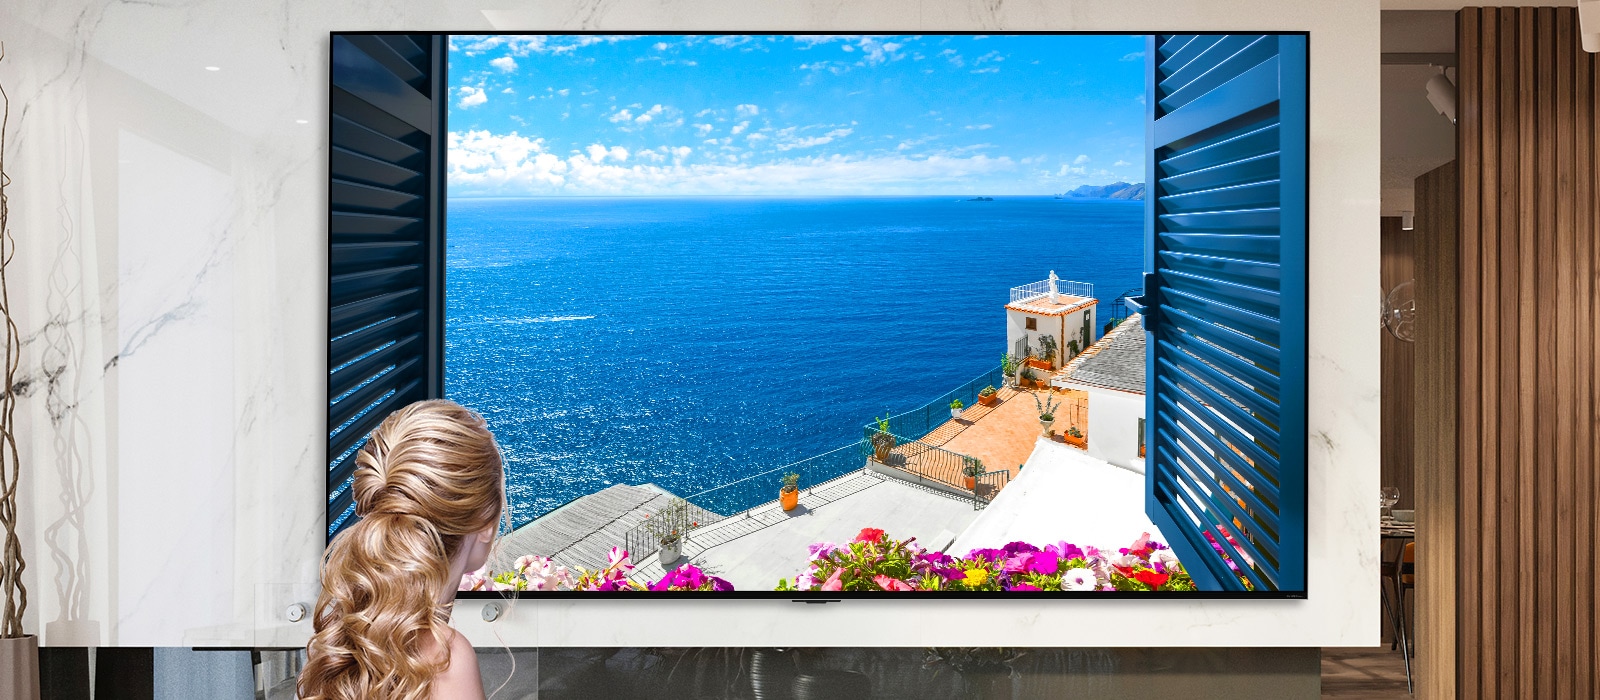 Stražnji prikaz žene koja kroz prozor gleda plavo more i bijele zgrade. Kako listate dalje niz stranicu, slika se smanjuje radi prikaza većeg dijela prostorije i otkrivanja da je prozor zapravo televizor LG QNED Mini LED.